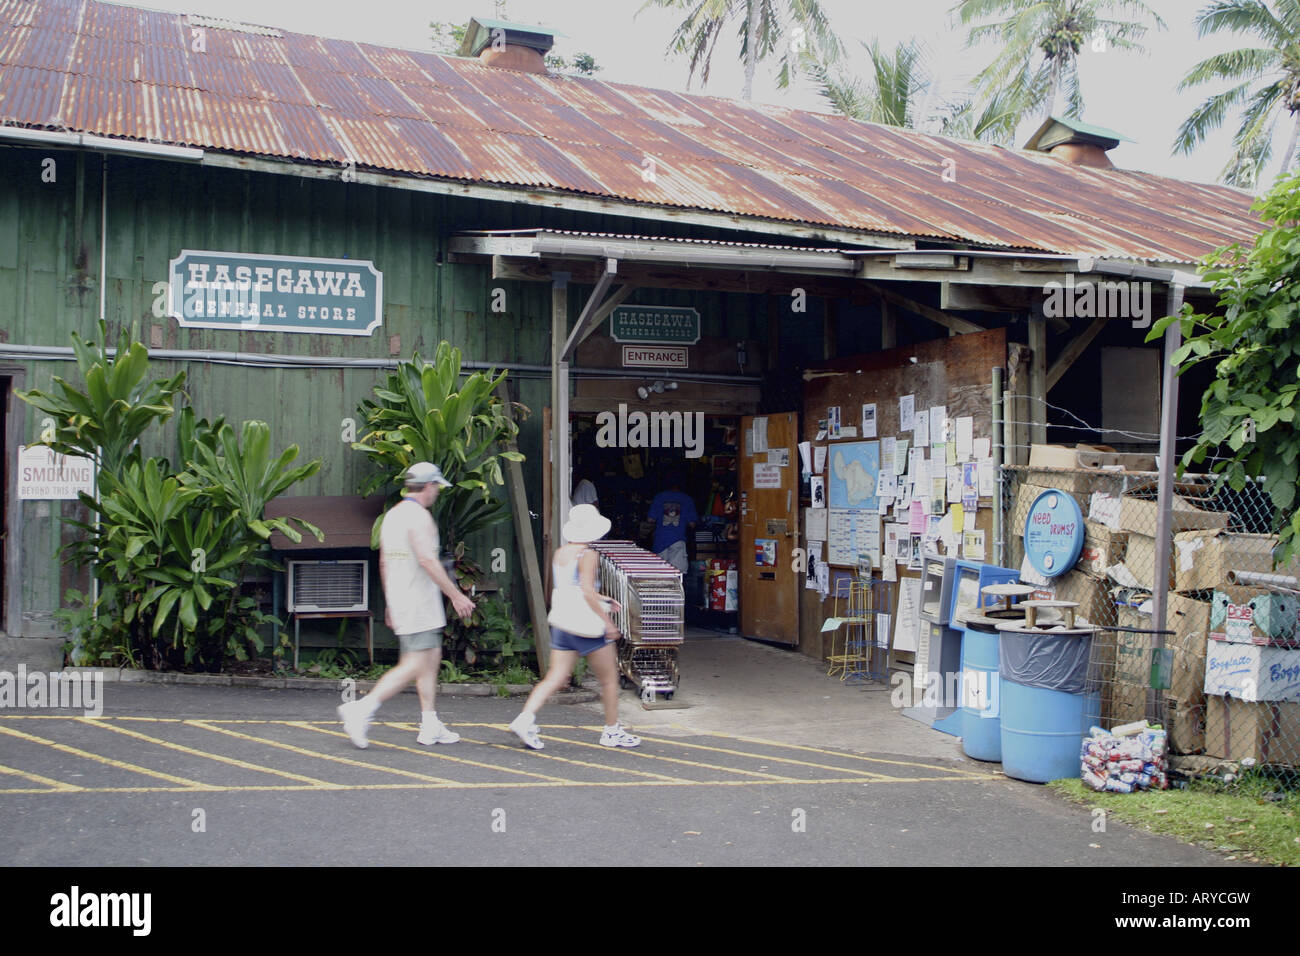 Hasegawa Gemischtwarenladen. Eine bemerkenswerte Sehenswürdigkeit in die Stadt Hana, Maui. Stockfoto